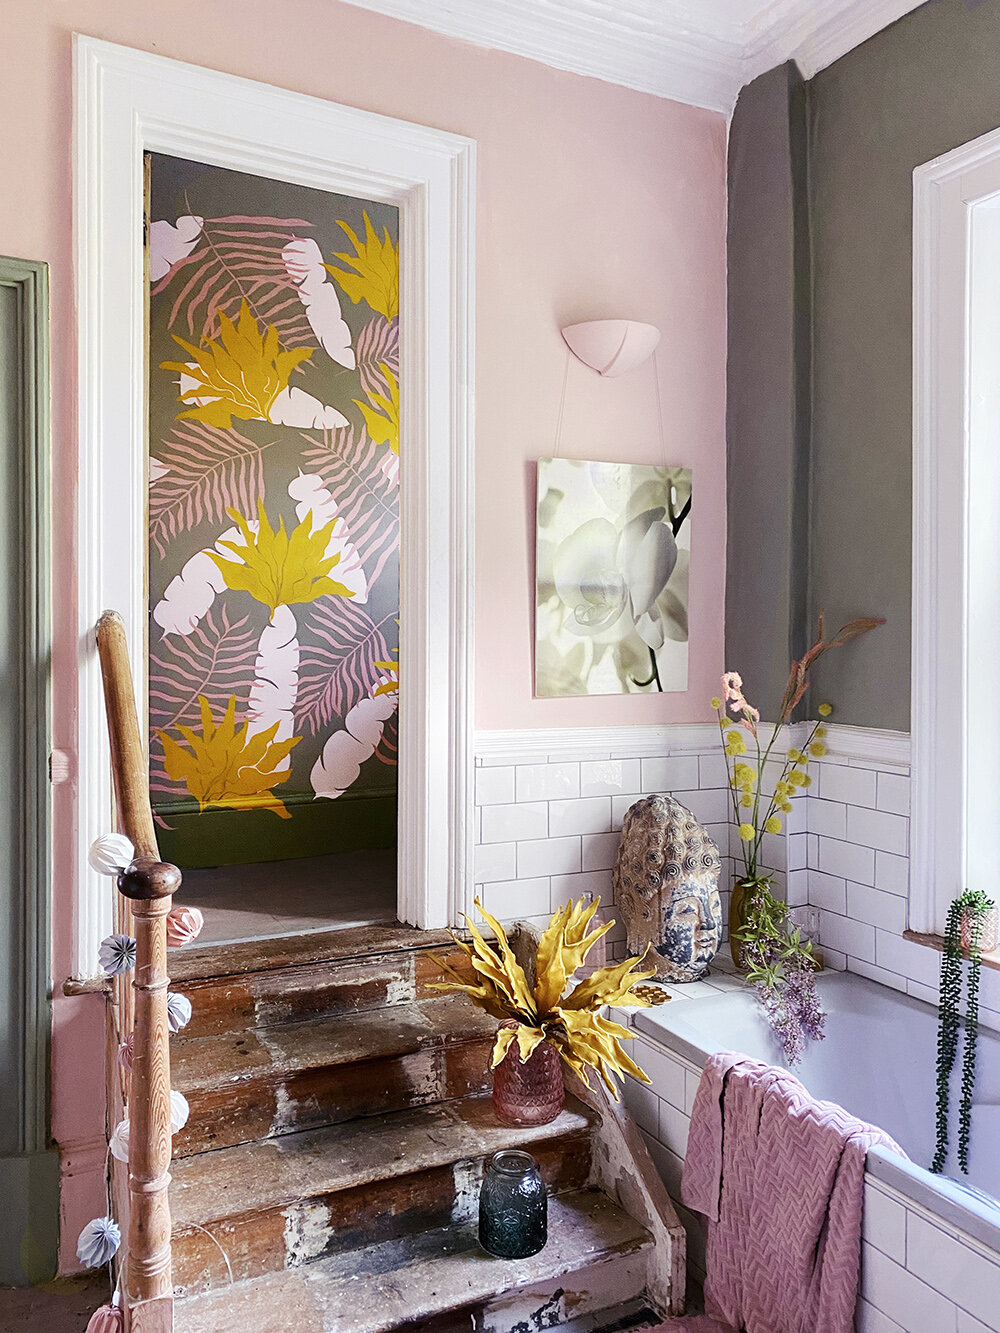 painted-wall-mural-pink-bathroom.jpg